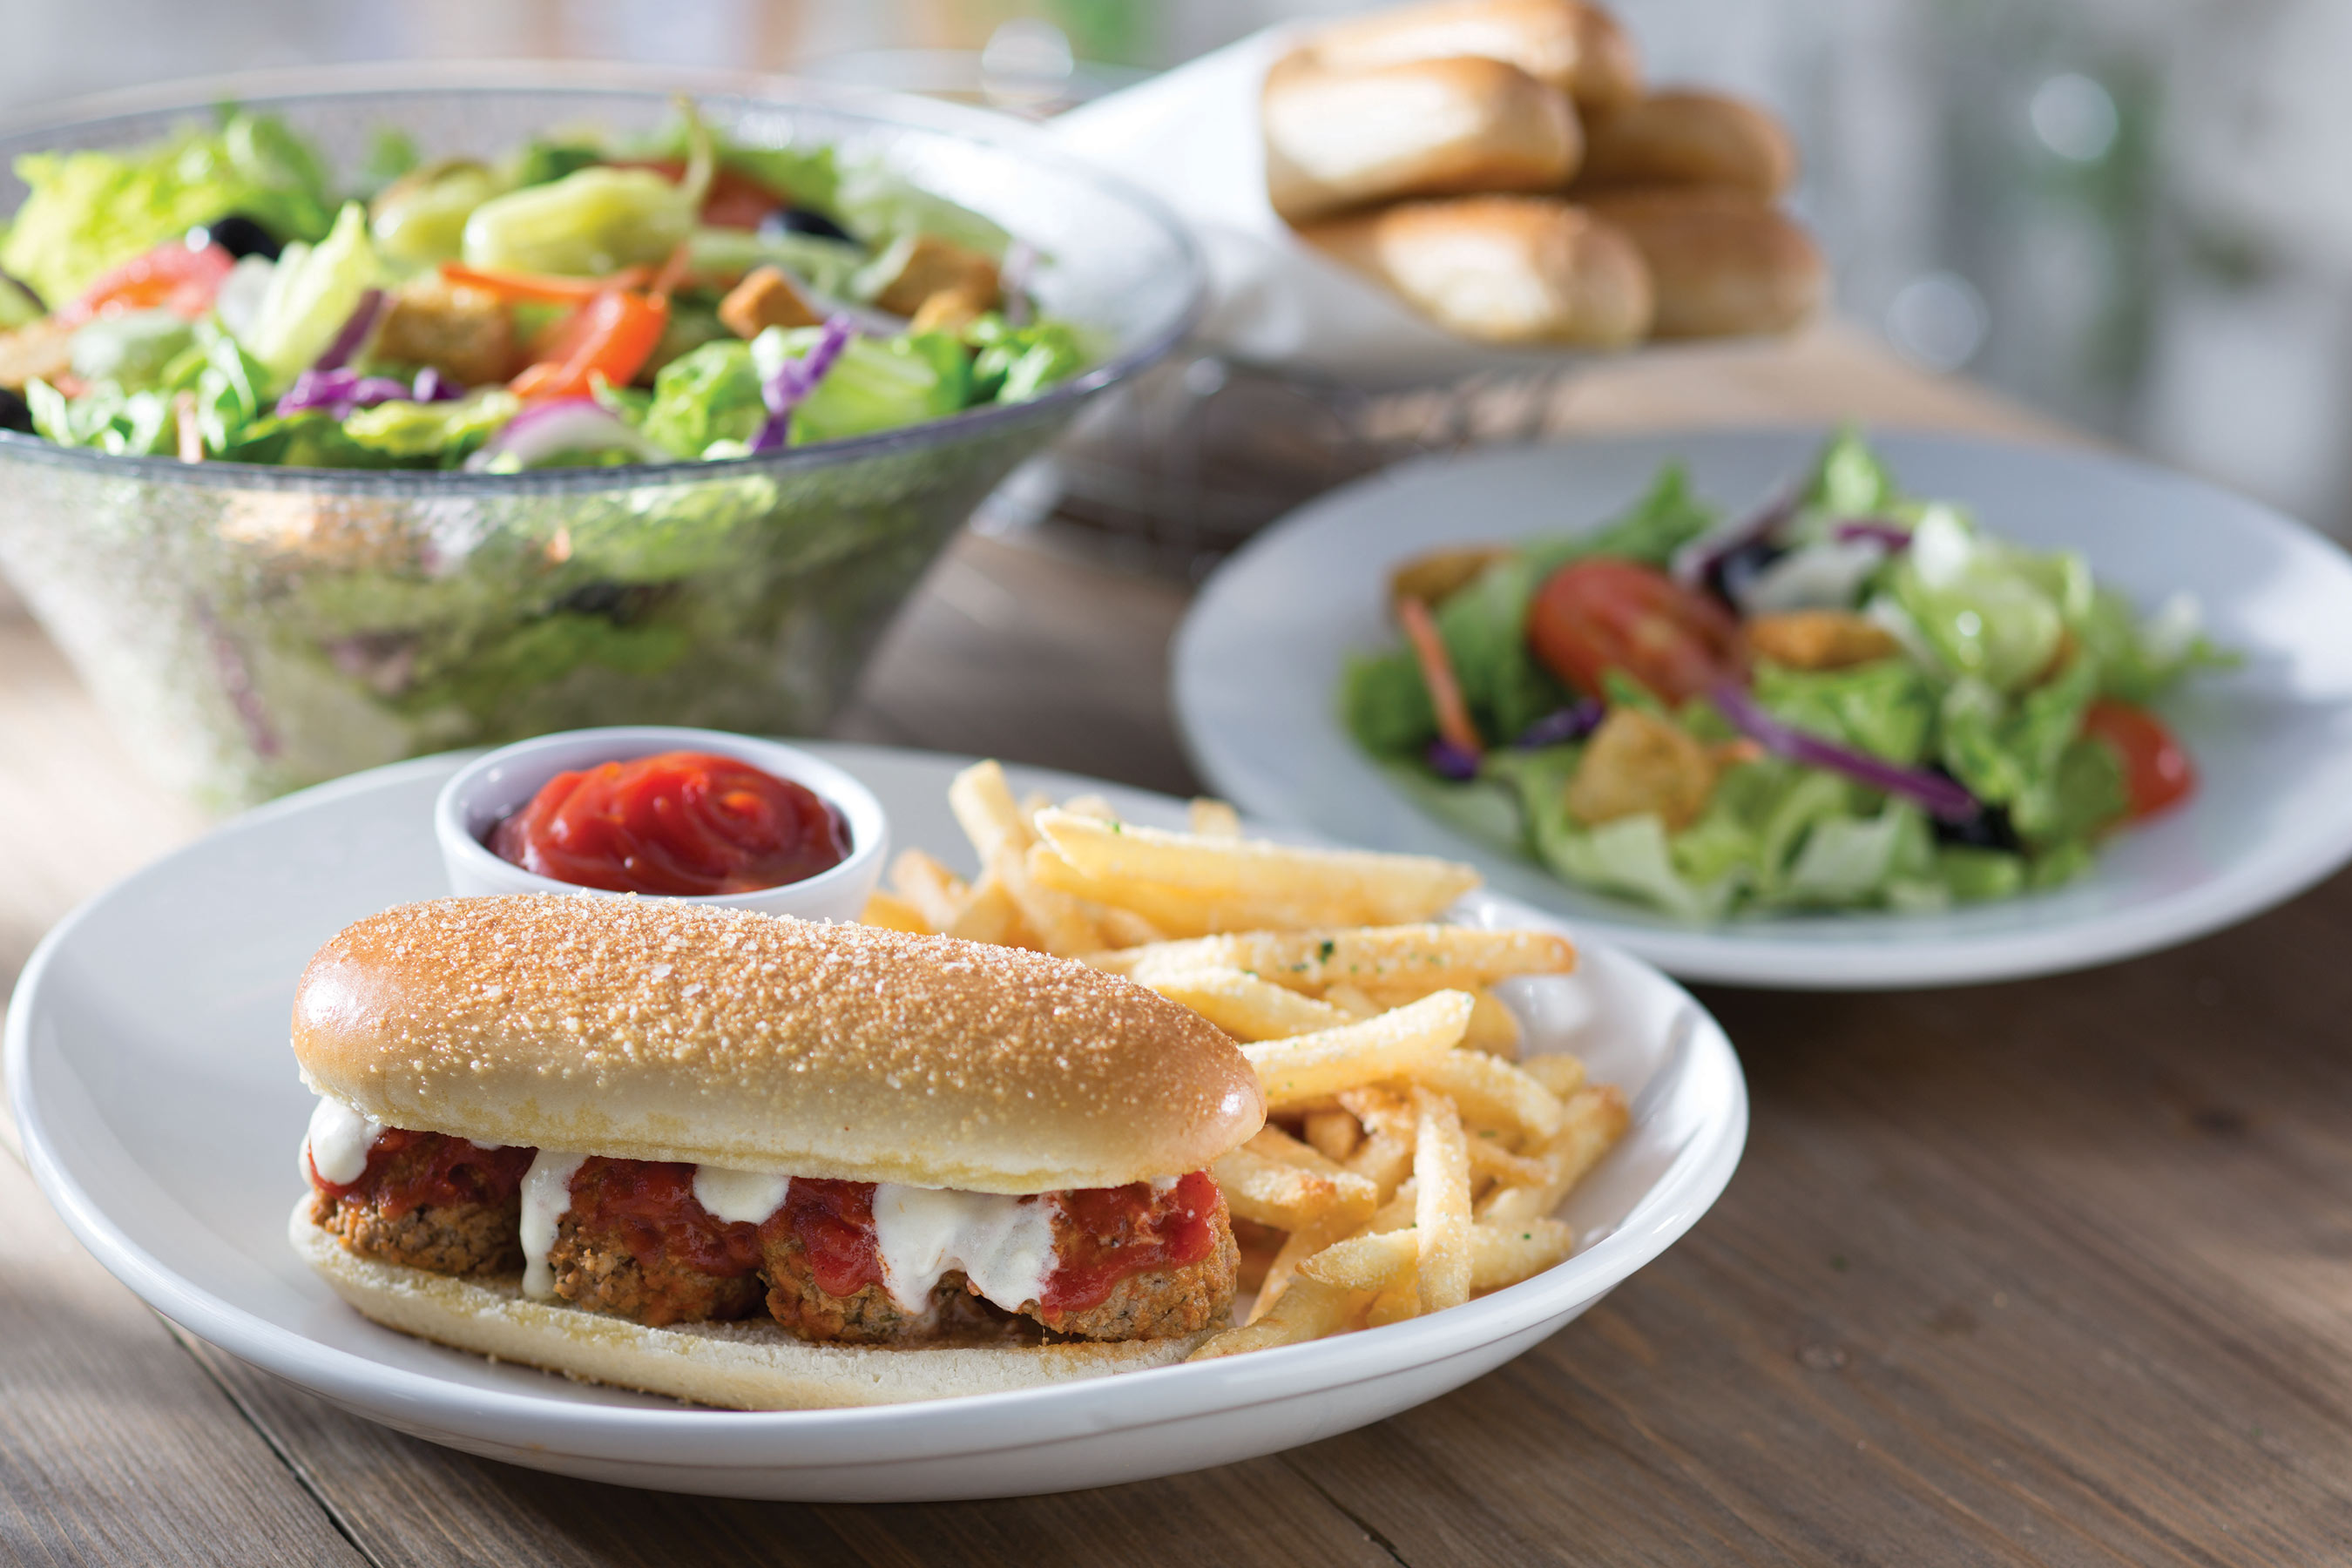 Olive Garden Breadstick Sandwiches Make Their Menu Debut